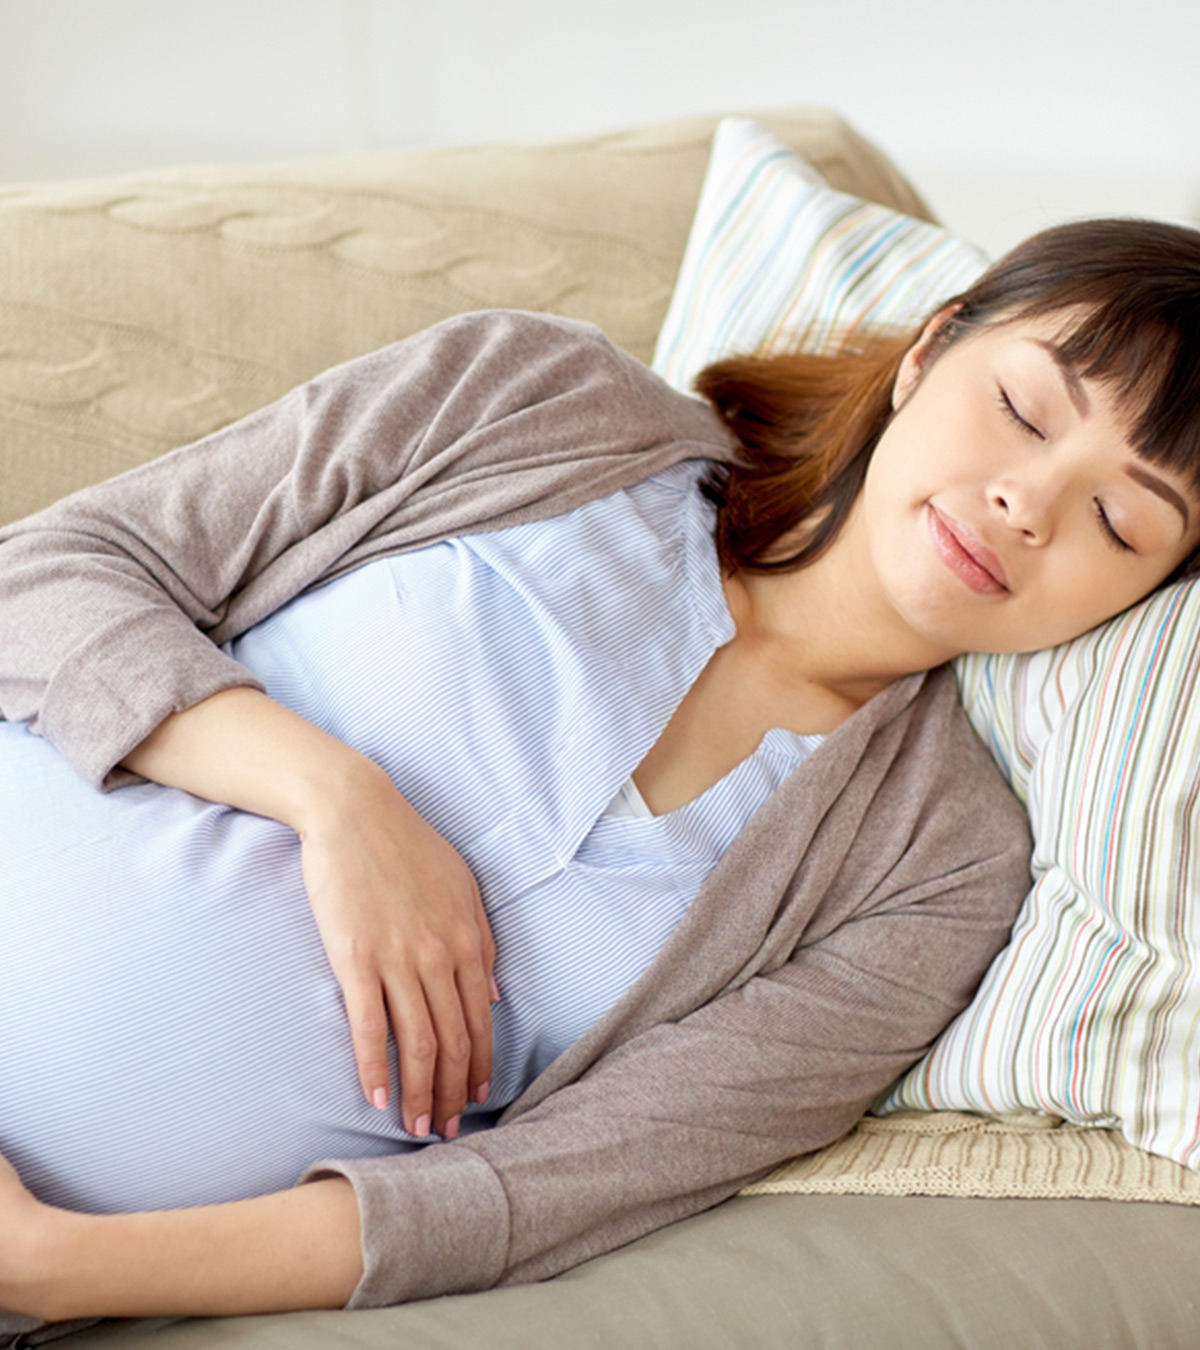 How I Ensured I Slept On My Side During Pregnancy: Mum’s Expert Tips